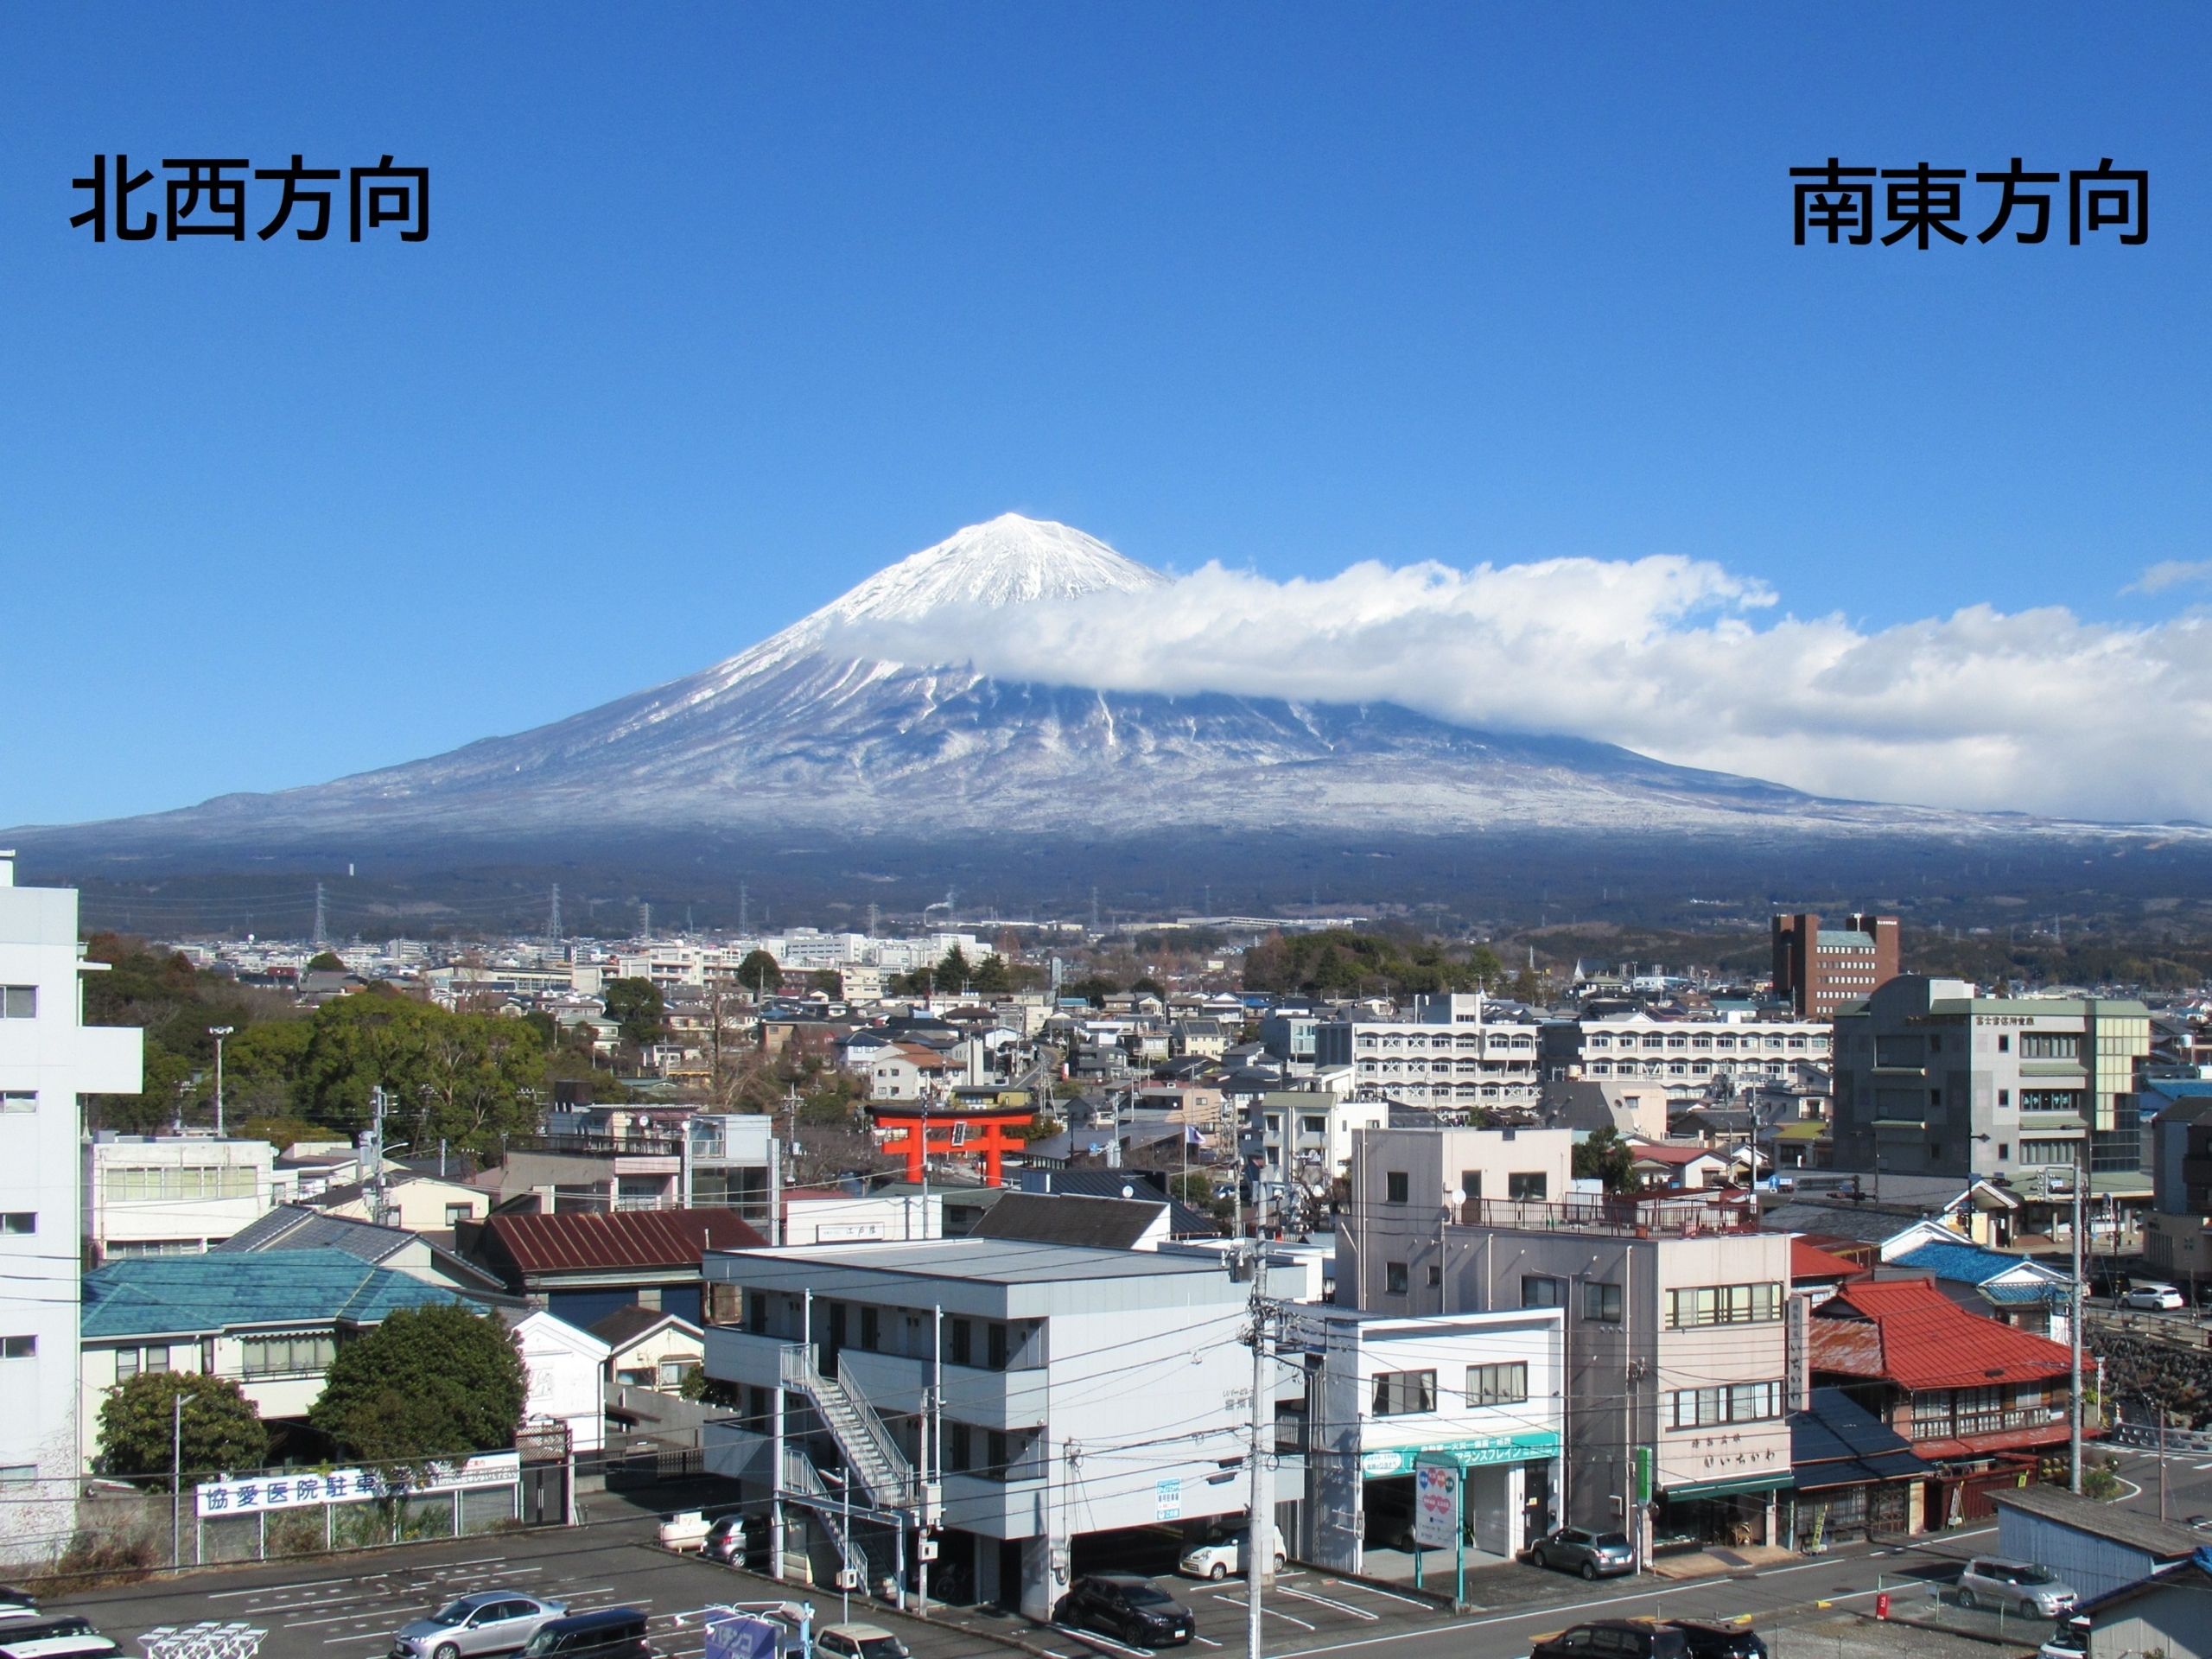 (1)富士山世界遺産センター